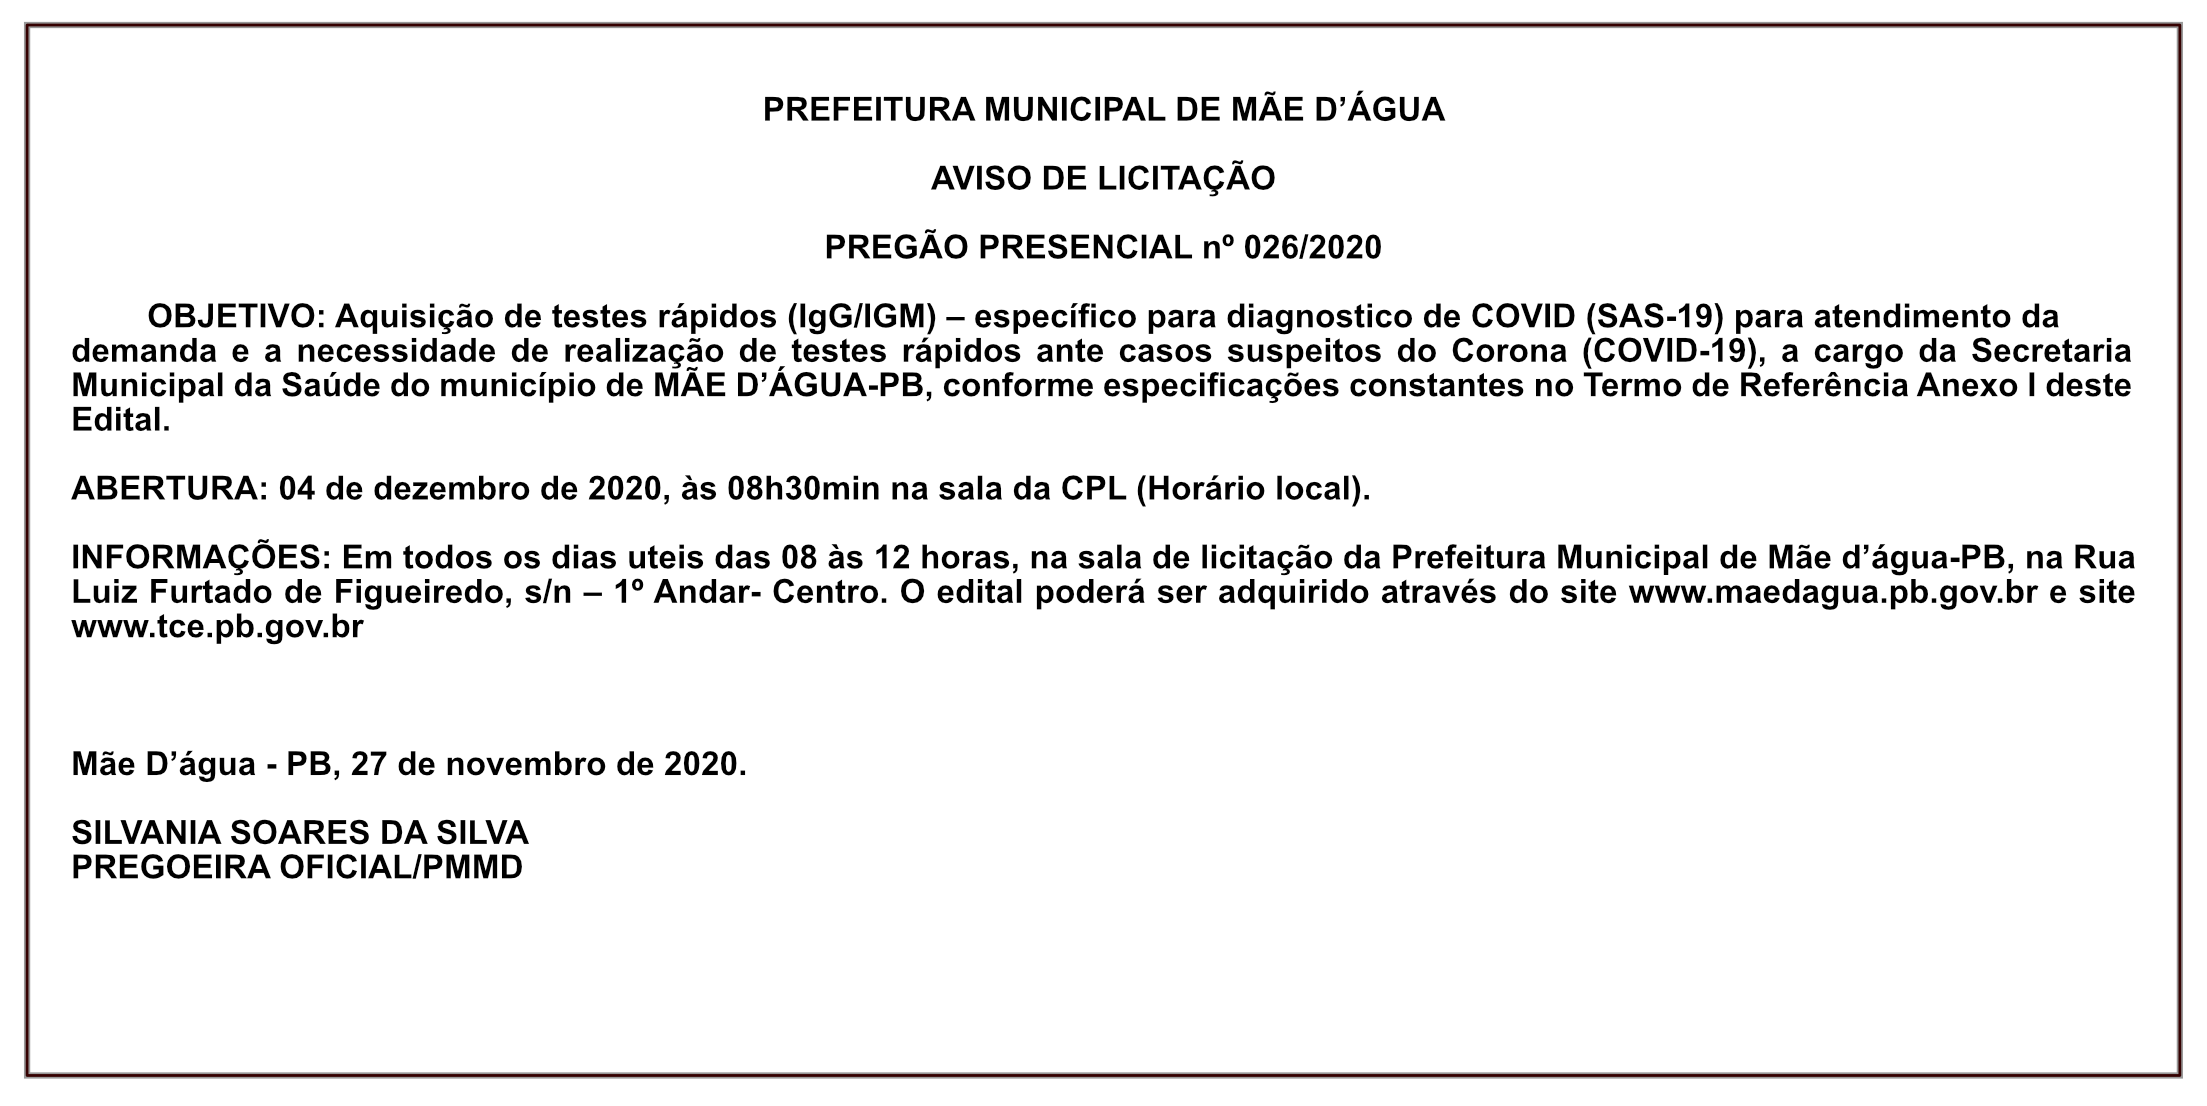 PREFEITURA MUNICIPAL DE MÃE D’ÁGUA  – AVISO DE LICITAÇÃO – PREGÃO PRESENCIAL Nº 026/2020